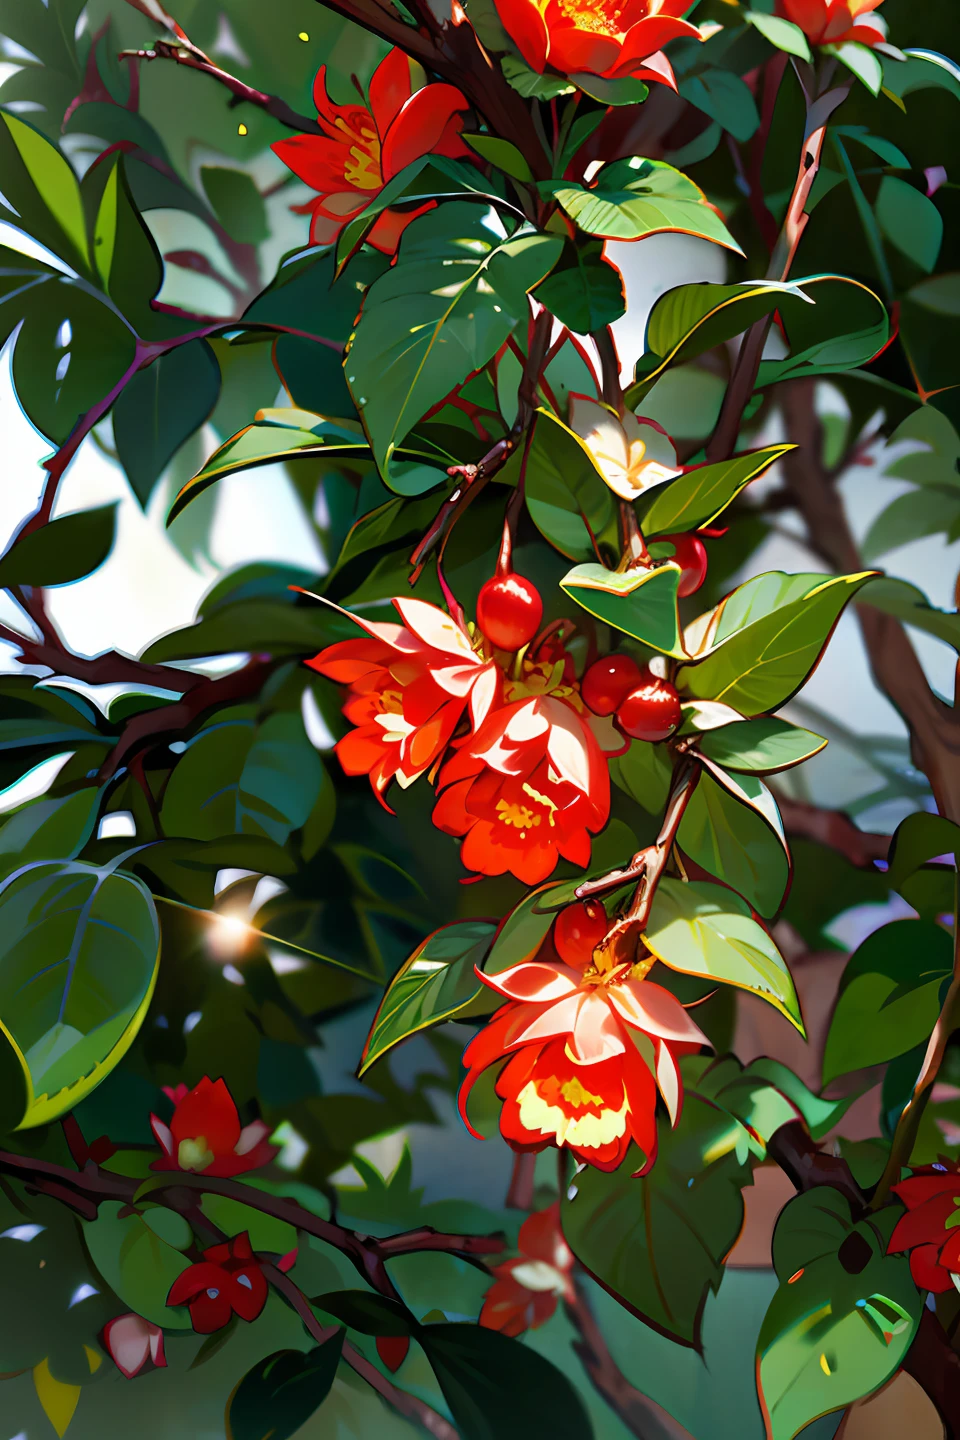 Red Granatapfel flowers，Uralter Wind，Chinesische große Brüste，Granatapfel，Blumen，grünes Blatt，Feinere Detailbeleuchtung